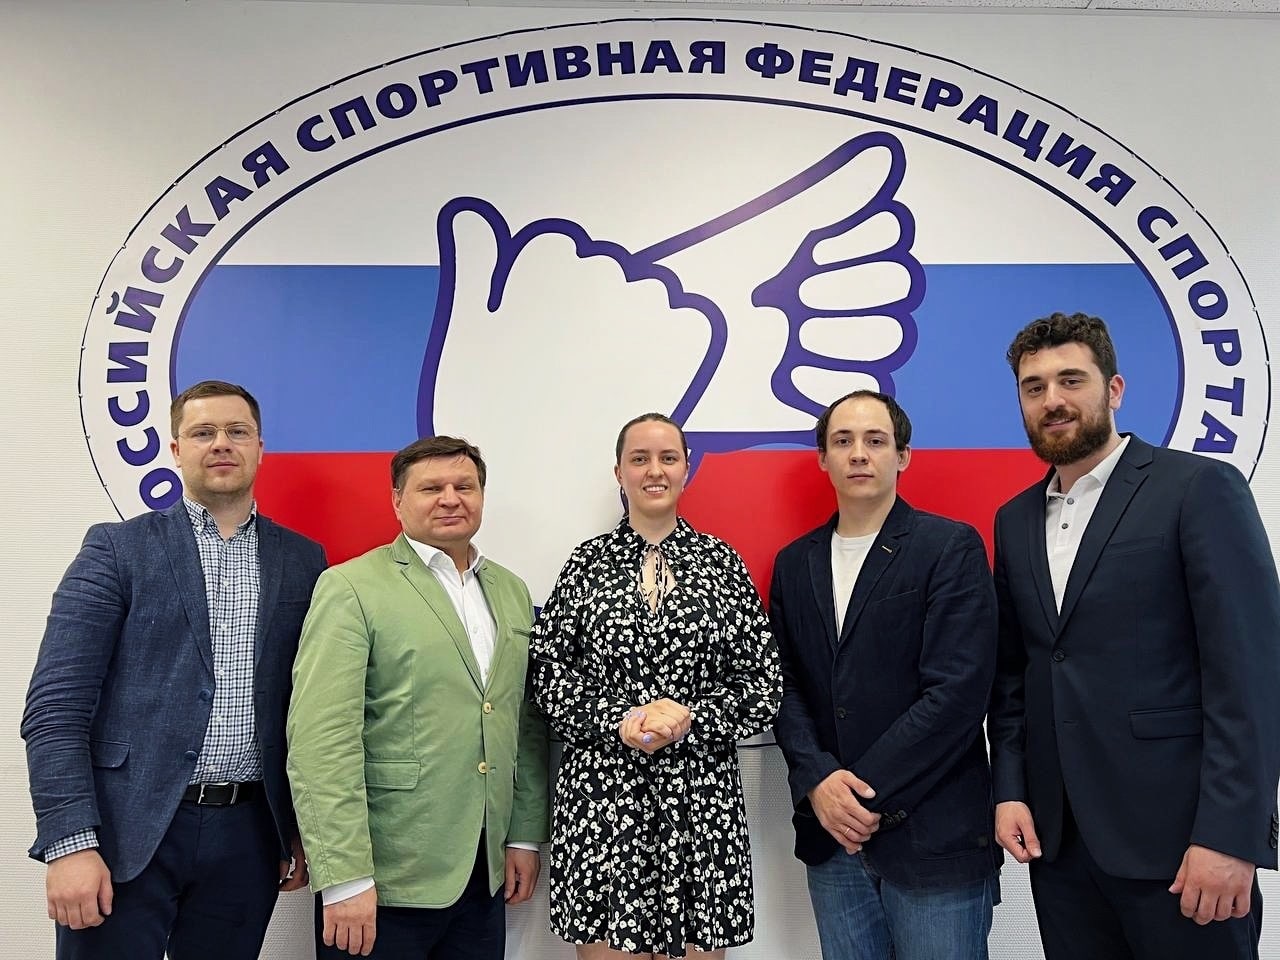 Группа глухонемых. Будущее общественных организаций в России. Ансамбль глухих.